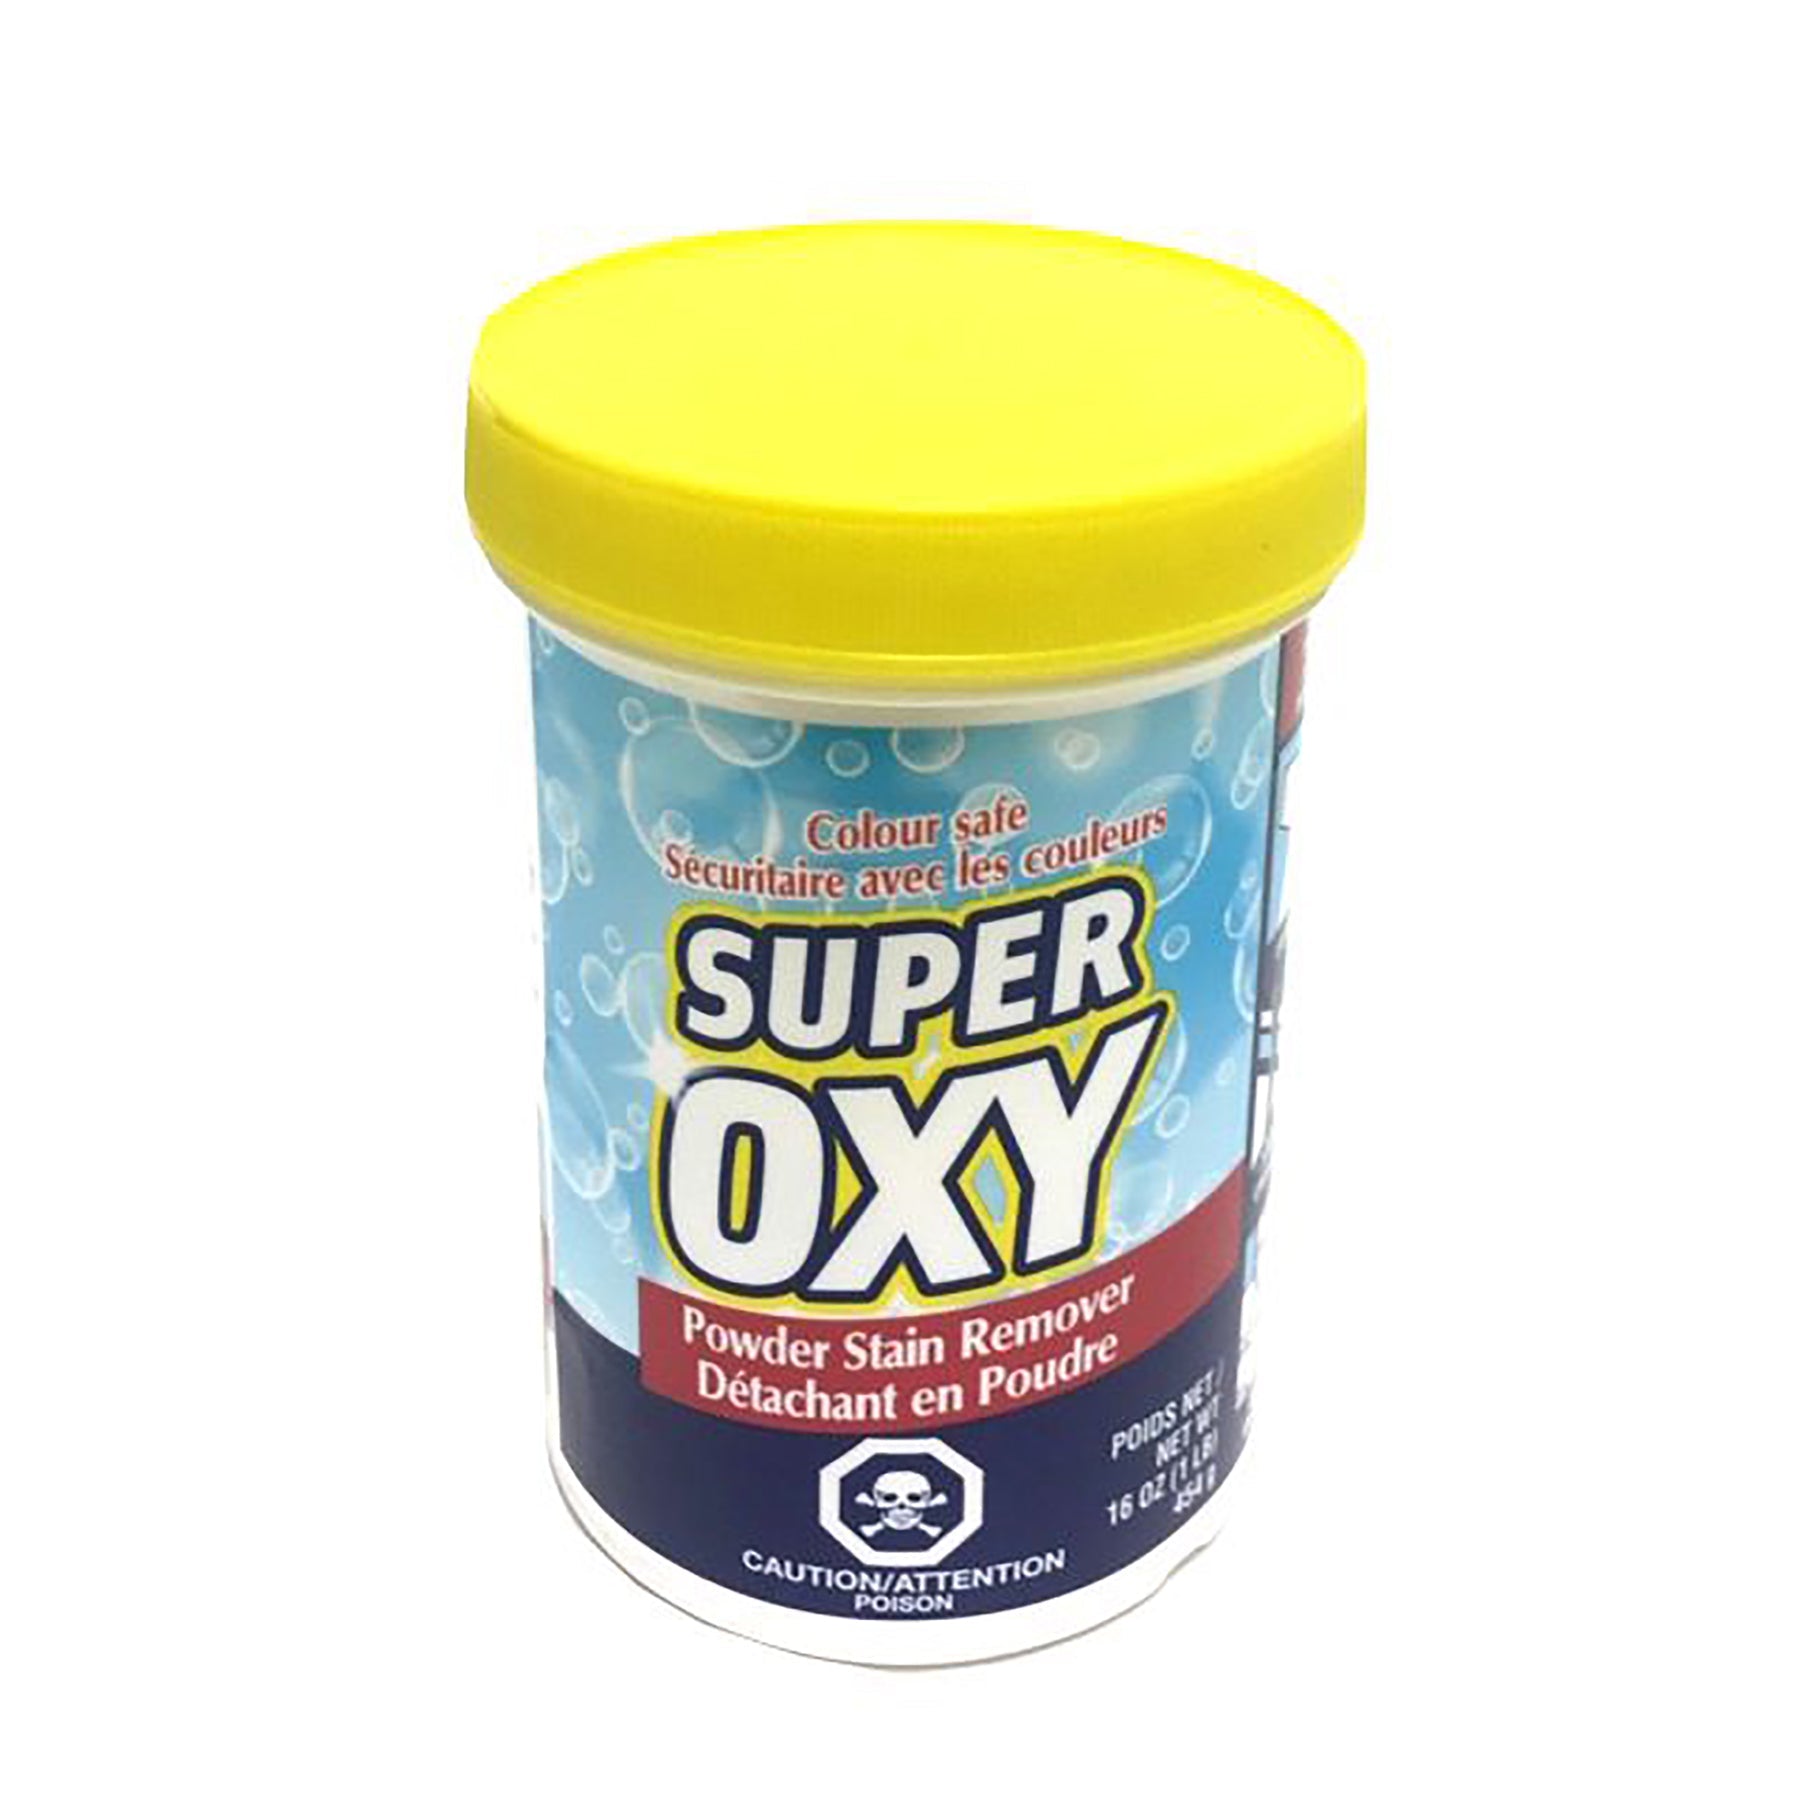 Super Oxy Powder Stain Remover 16oz